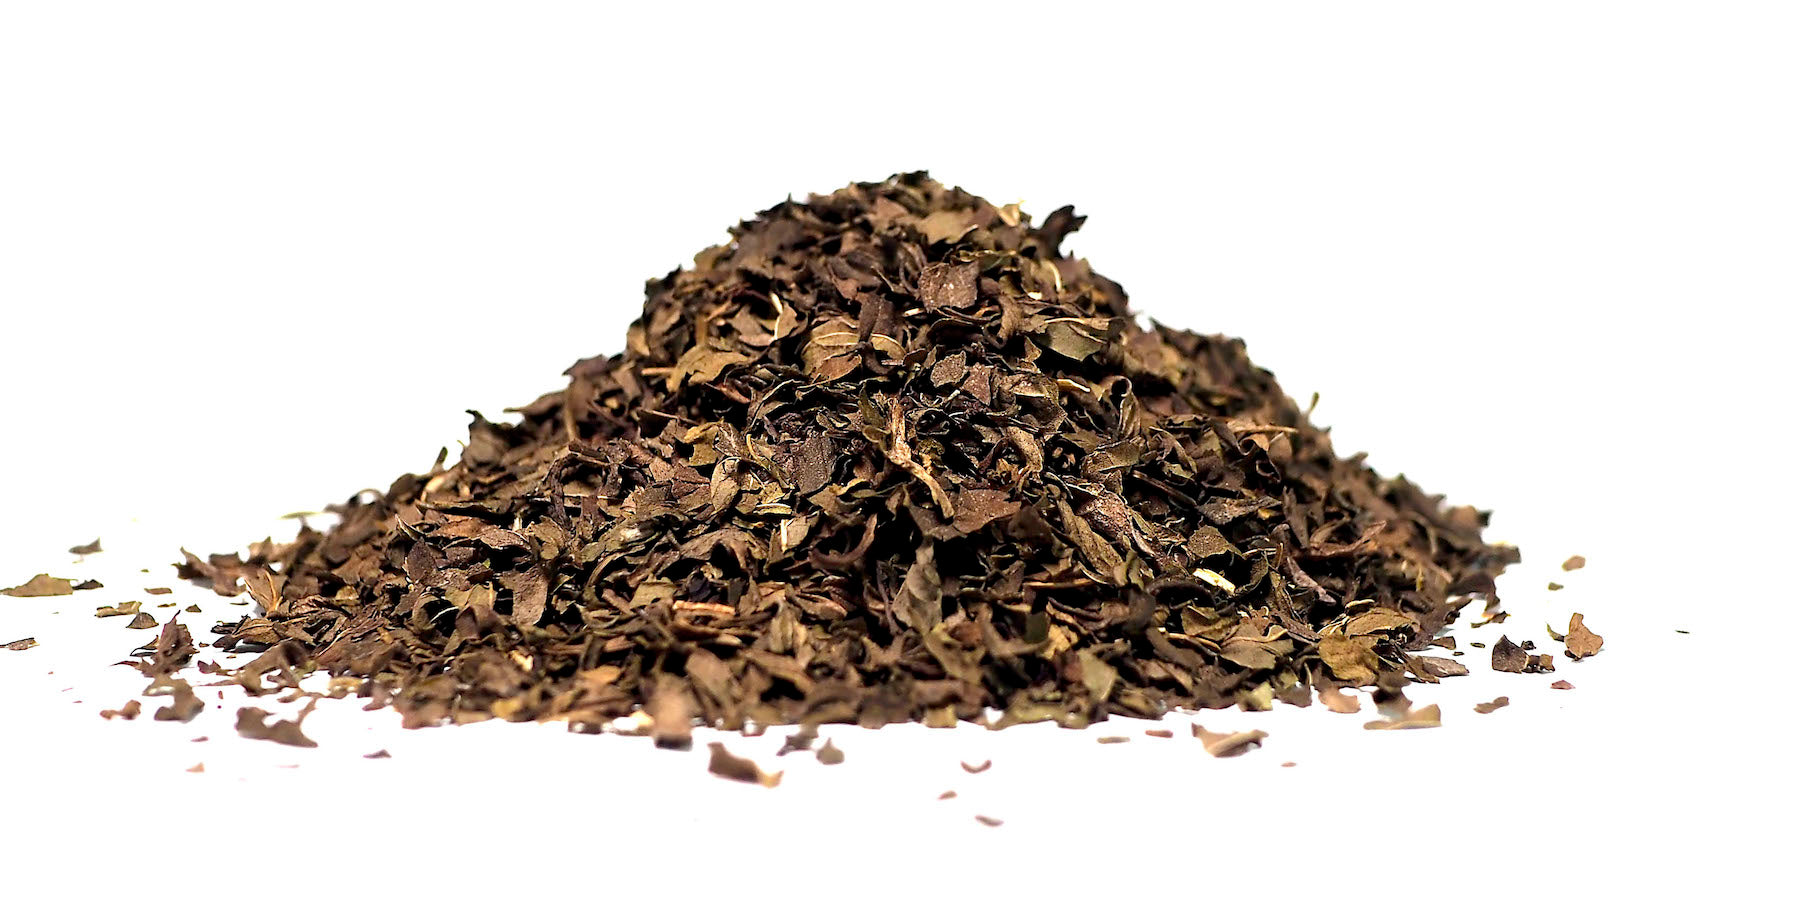  loose leaf peppermint tea